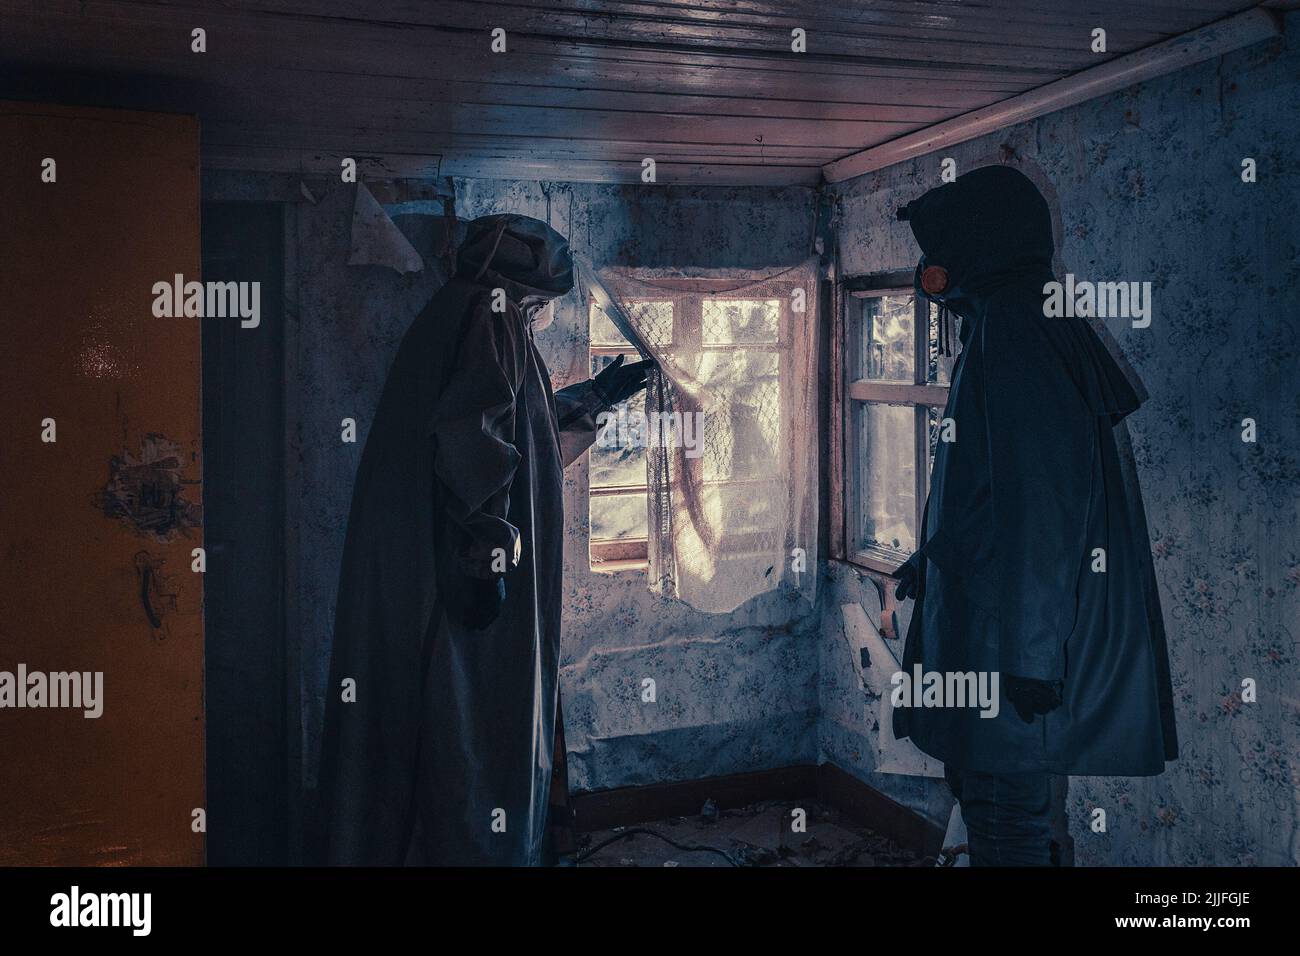 Poster del film immaginario. Le persone con torce, maschere e indumenti protettivi ispezionano la vecchia casa. Epidemie infette in casa distrutta. Ambiente scuro e cupo, elaborazione del filtro. Foto Stock